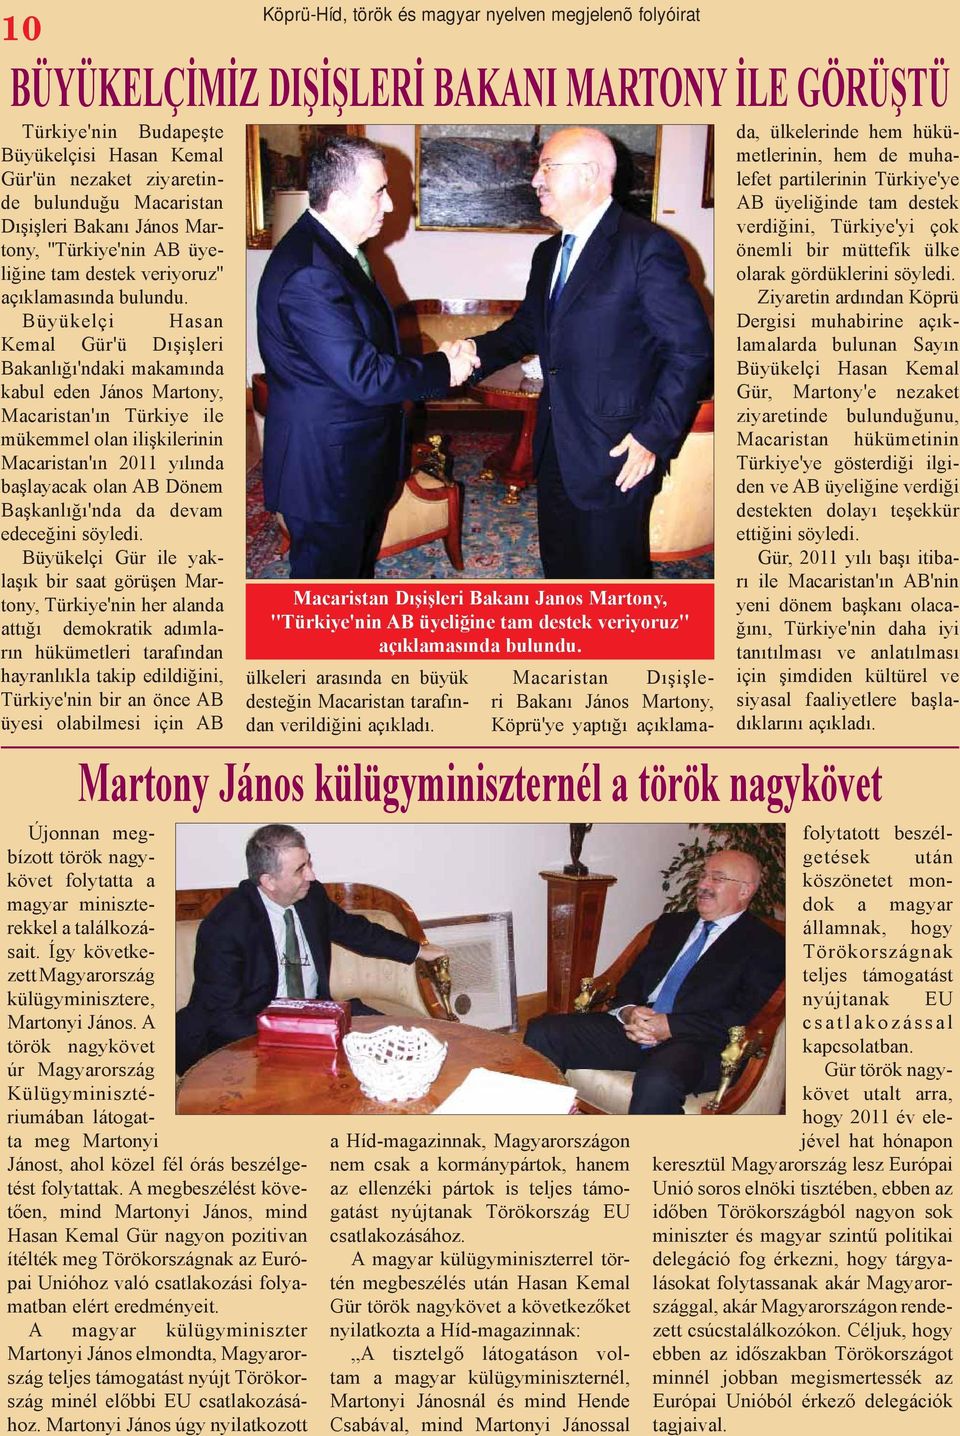 Büyükelçi Hasan Kemal Gür'ü Dışişleri Bakanlığı'ndaki makamında kabul eden János Martony, Macaristan'ın Türkiye ile mükemmel olan ilişkilerinin Macaristan'ın 2011 yılında başlayacak olan AB Dönem